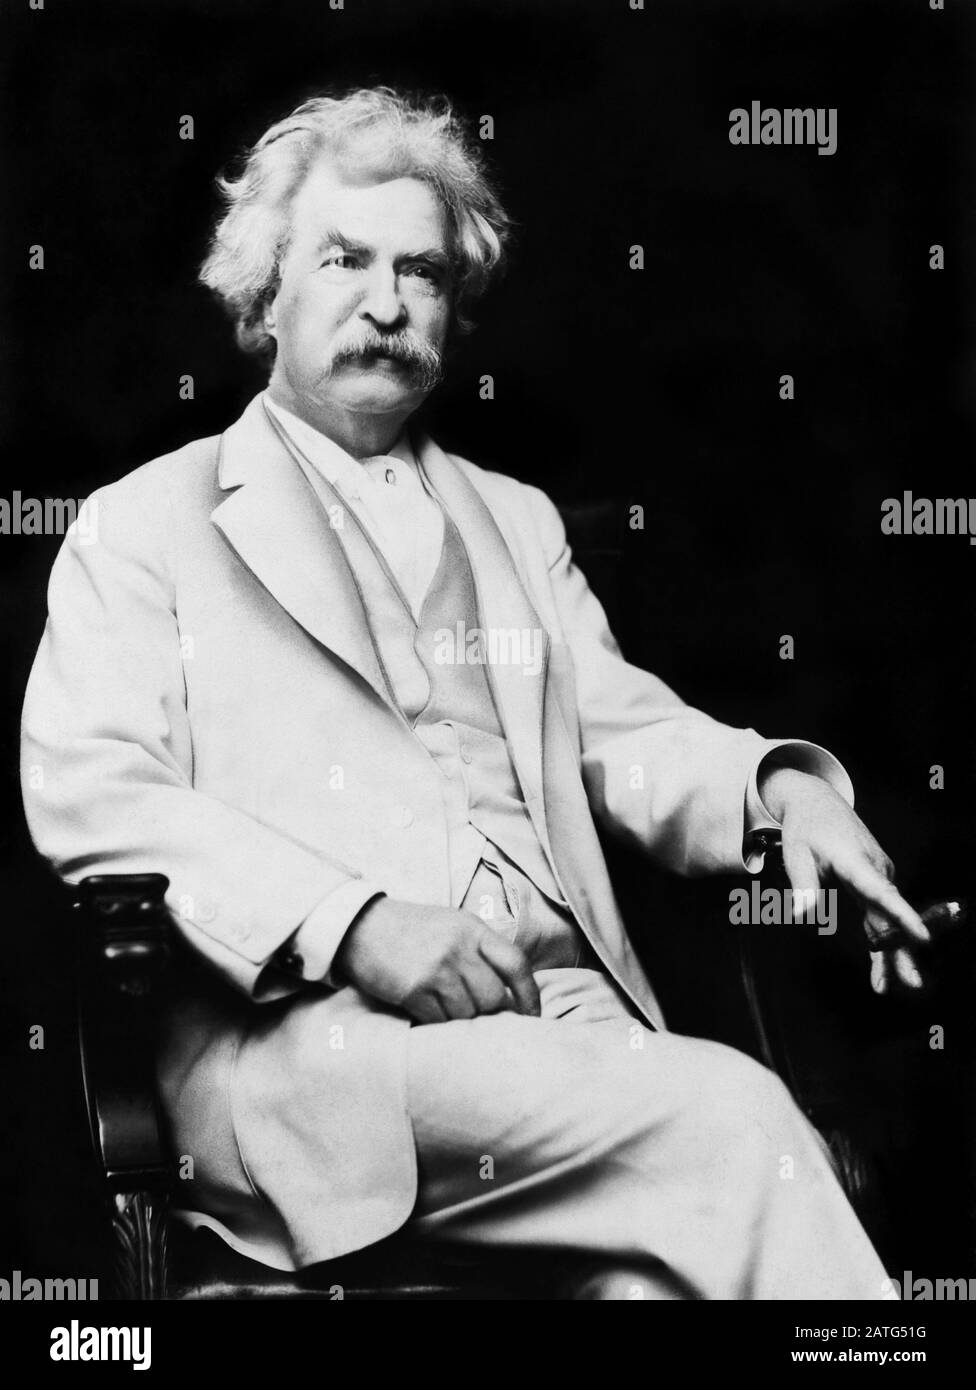 Ritratto d'epoca di scrittore americano e umorista Samuel Langhorne Clemens (1835 – 1910), meglio conosciuto dal suo nome di penna di Mark Twain. Foto circa 1907 di un F Bradley di New York. Foto Stock